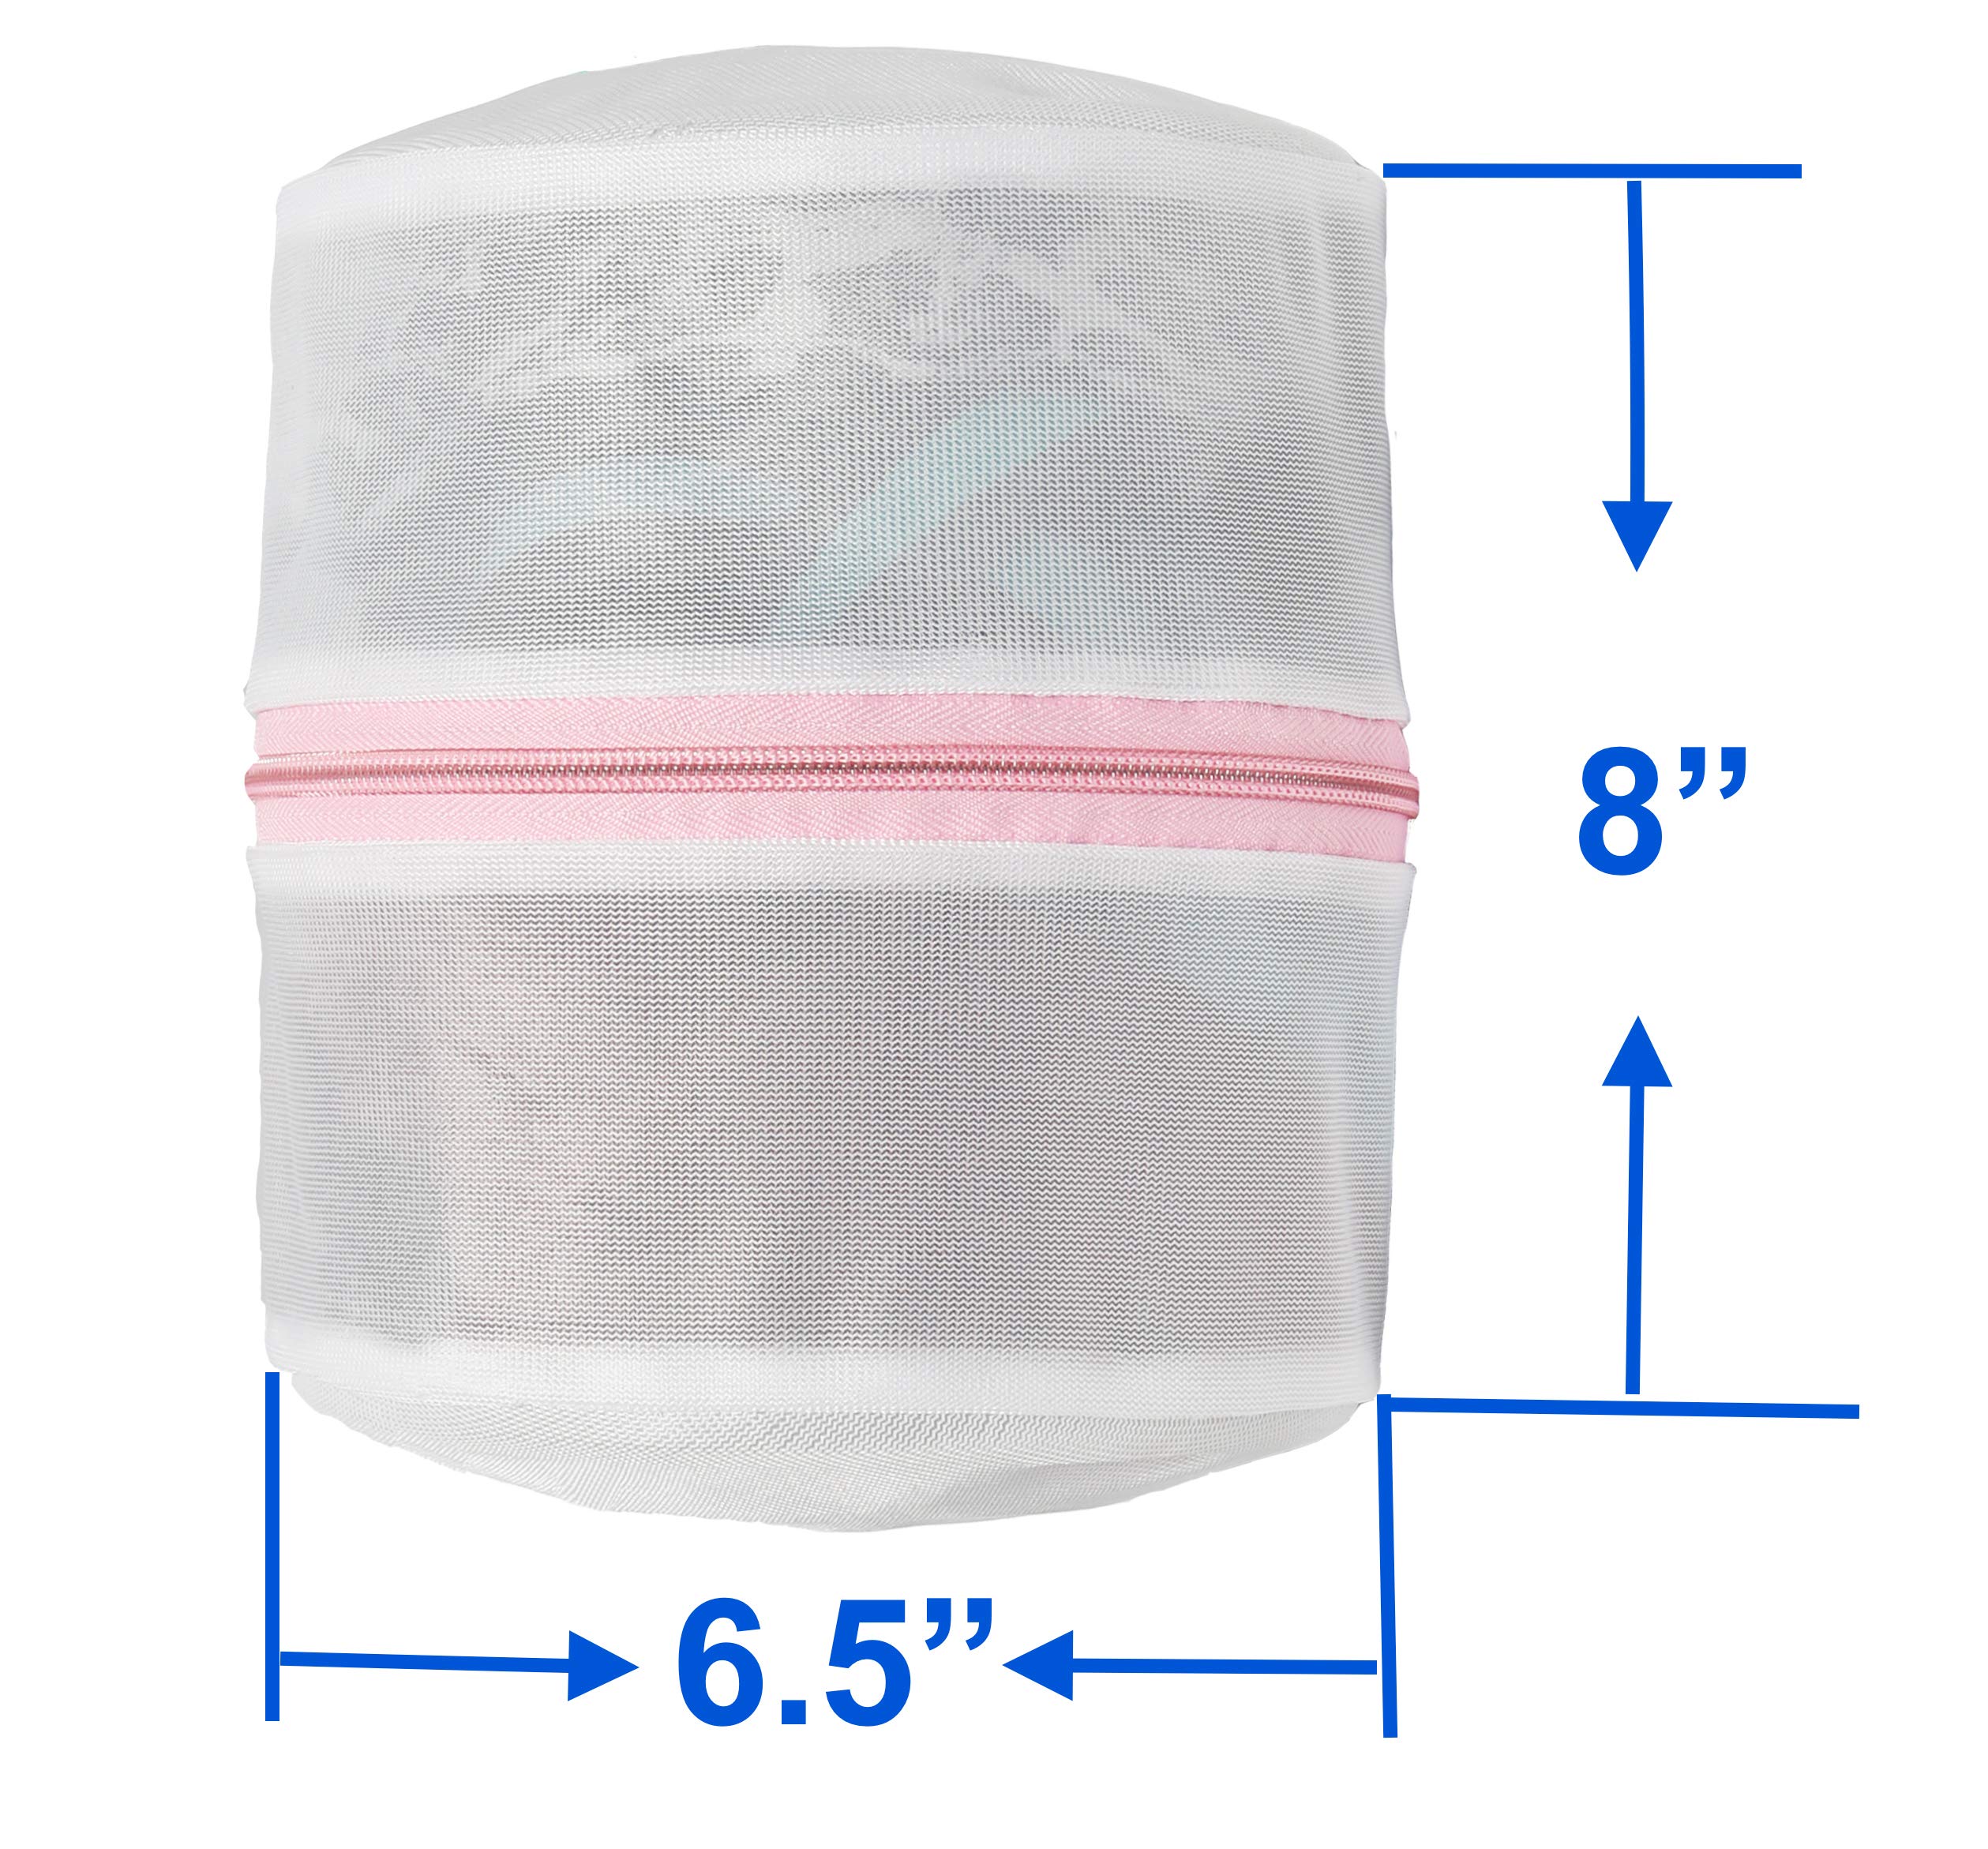 Simple Houseware Premium Bra Lingerie Wash Bags - 3 Pack